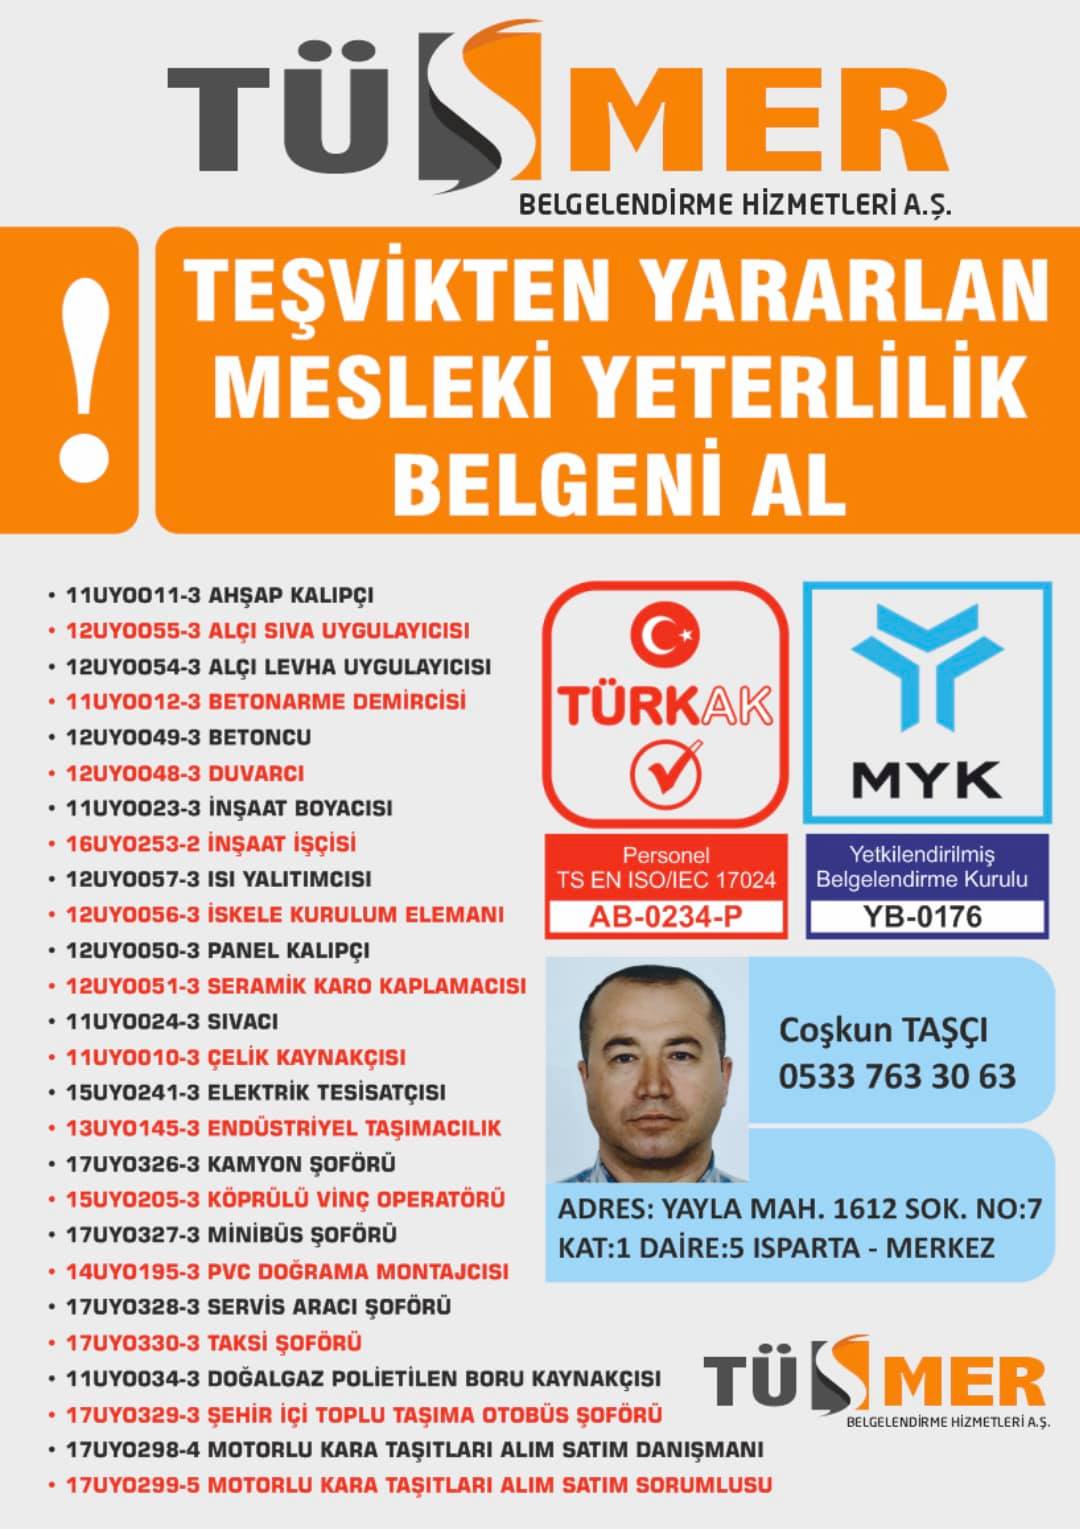 MYK MESLEKİ YETERLİLİK BELGESİ Harmantepe Kâğıthane İstanbul